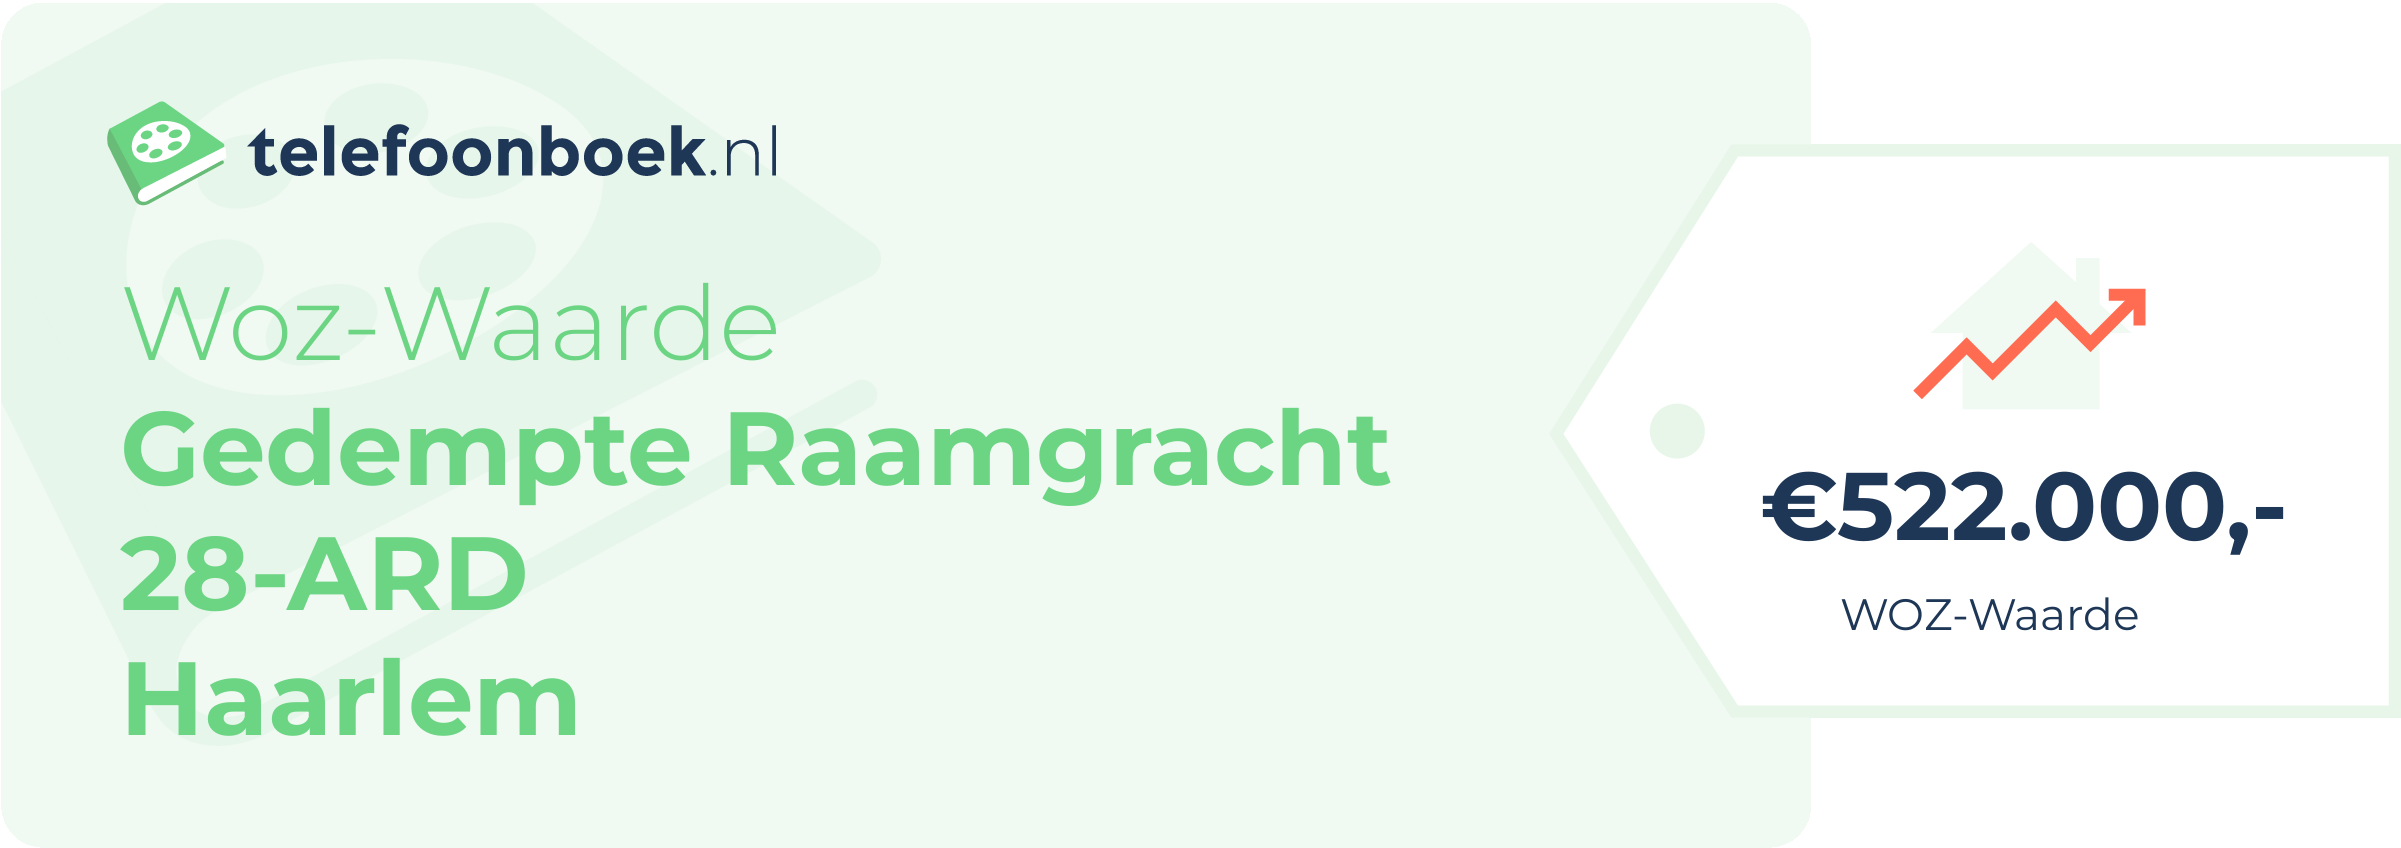 WOZ-waarde Gedempte Raamgracht 28-ARD Haarlem